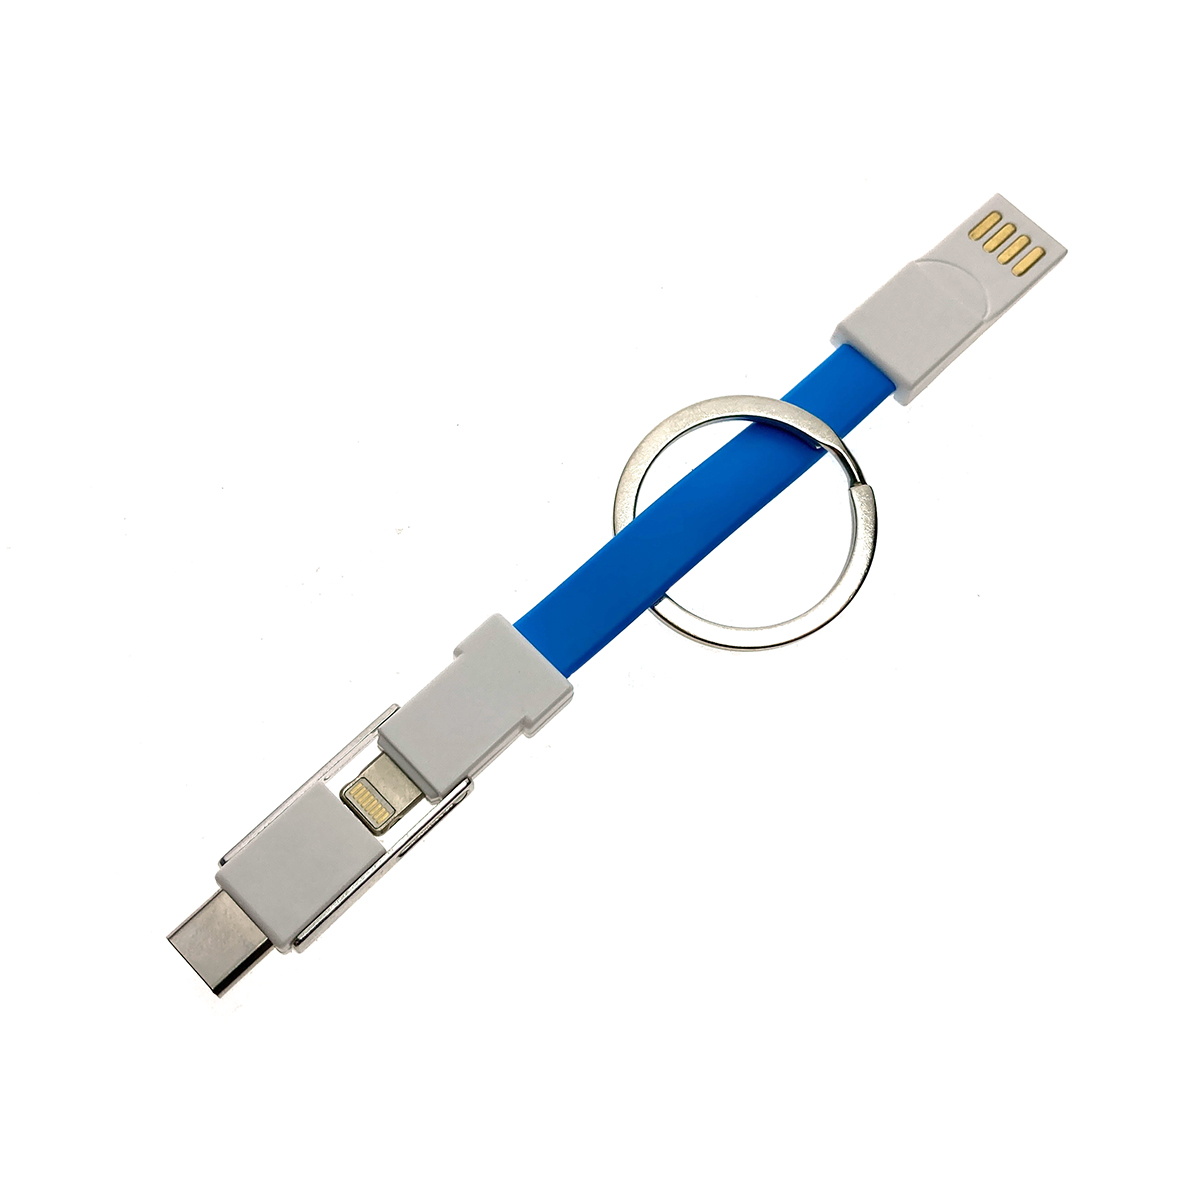 Универсальный брелок-переходник 3в1 USB 2.0 to type C + micro USB + iphone Lightning 8pin, голубой, Emagn3i1 Espada